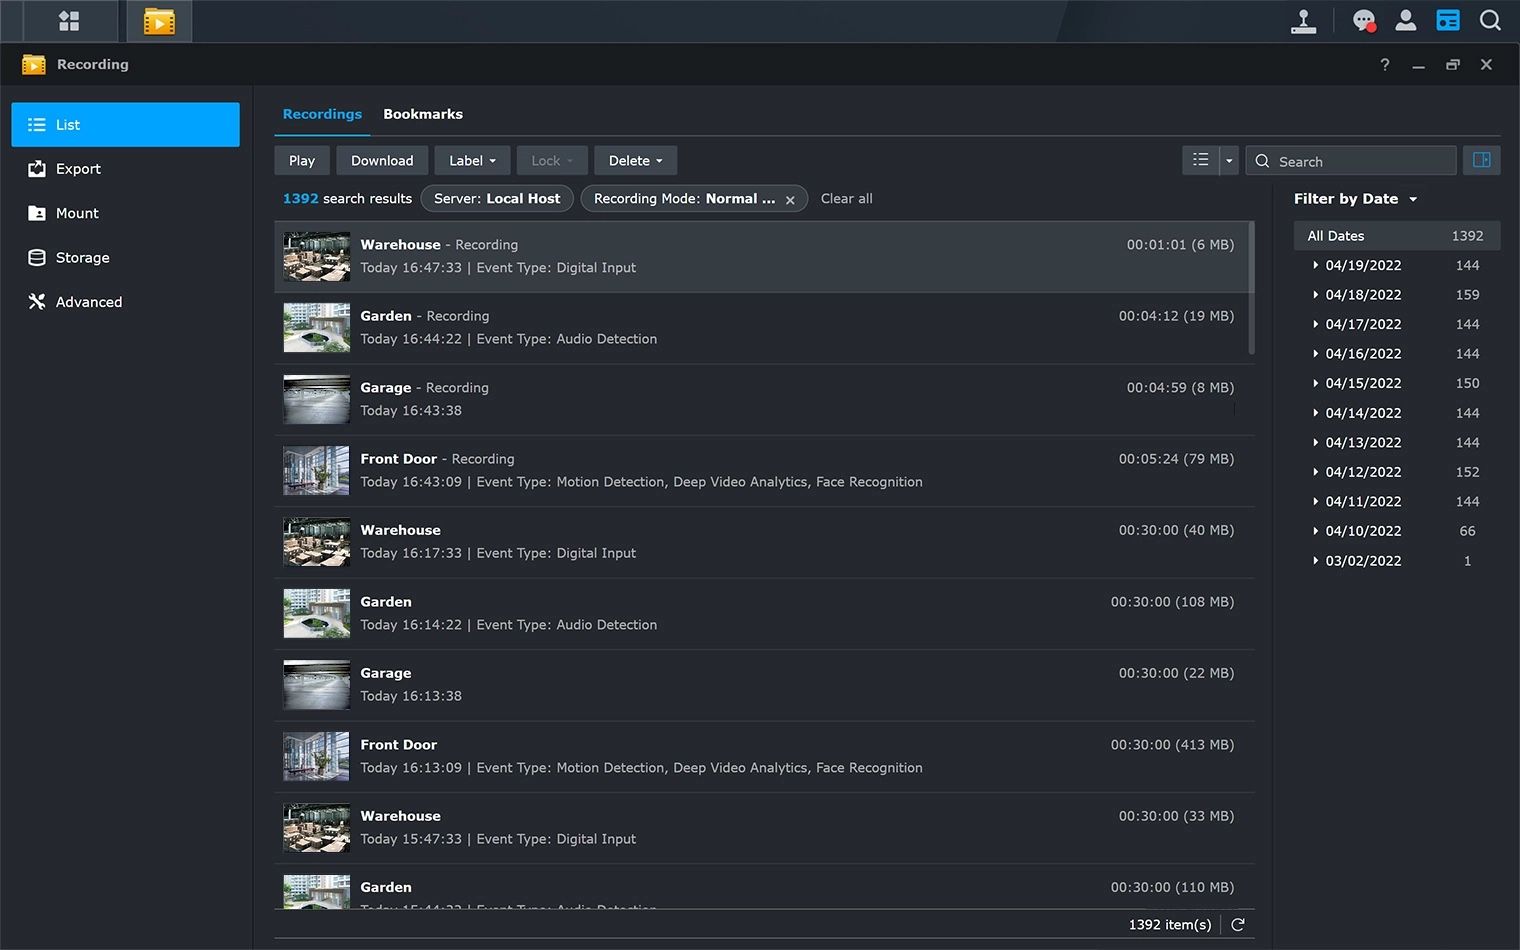 Captura de tela do software Synology Surveillance Station mostrando as gravações